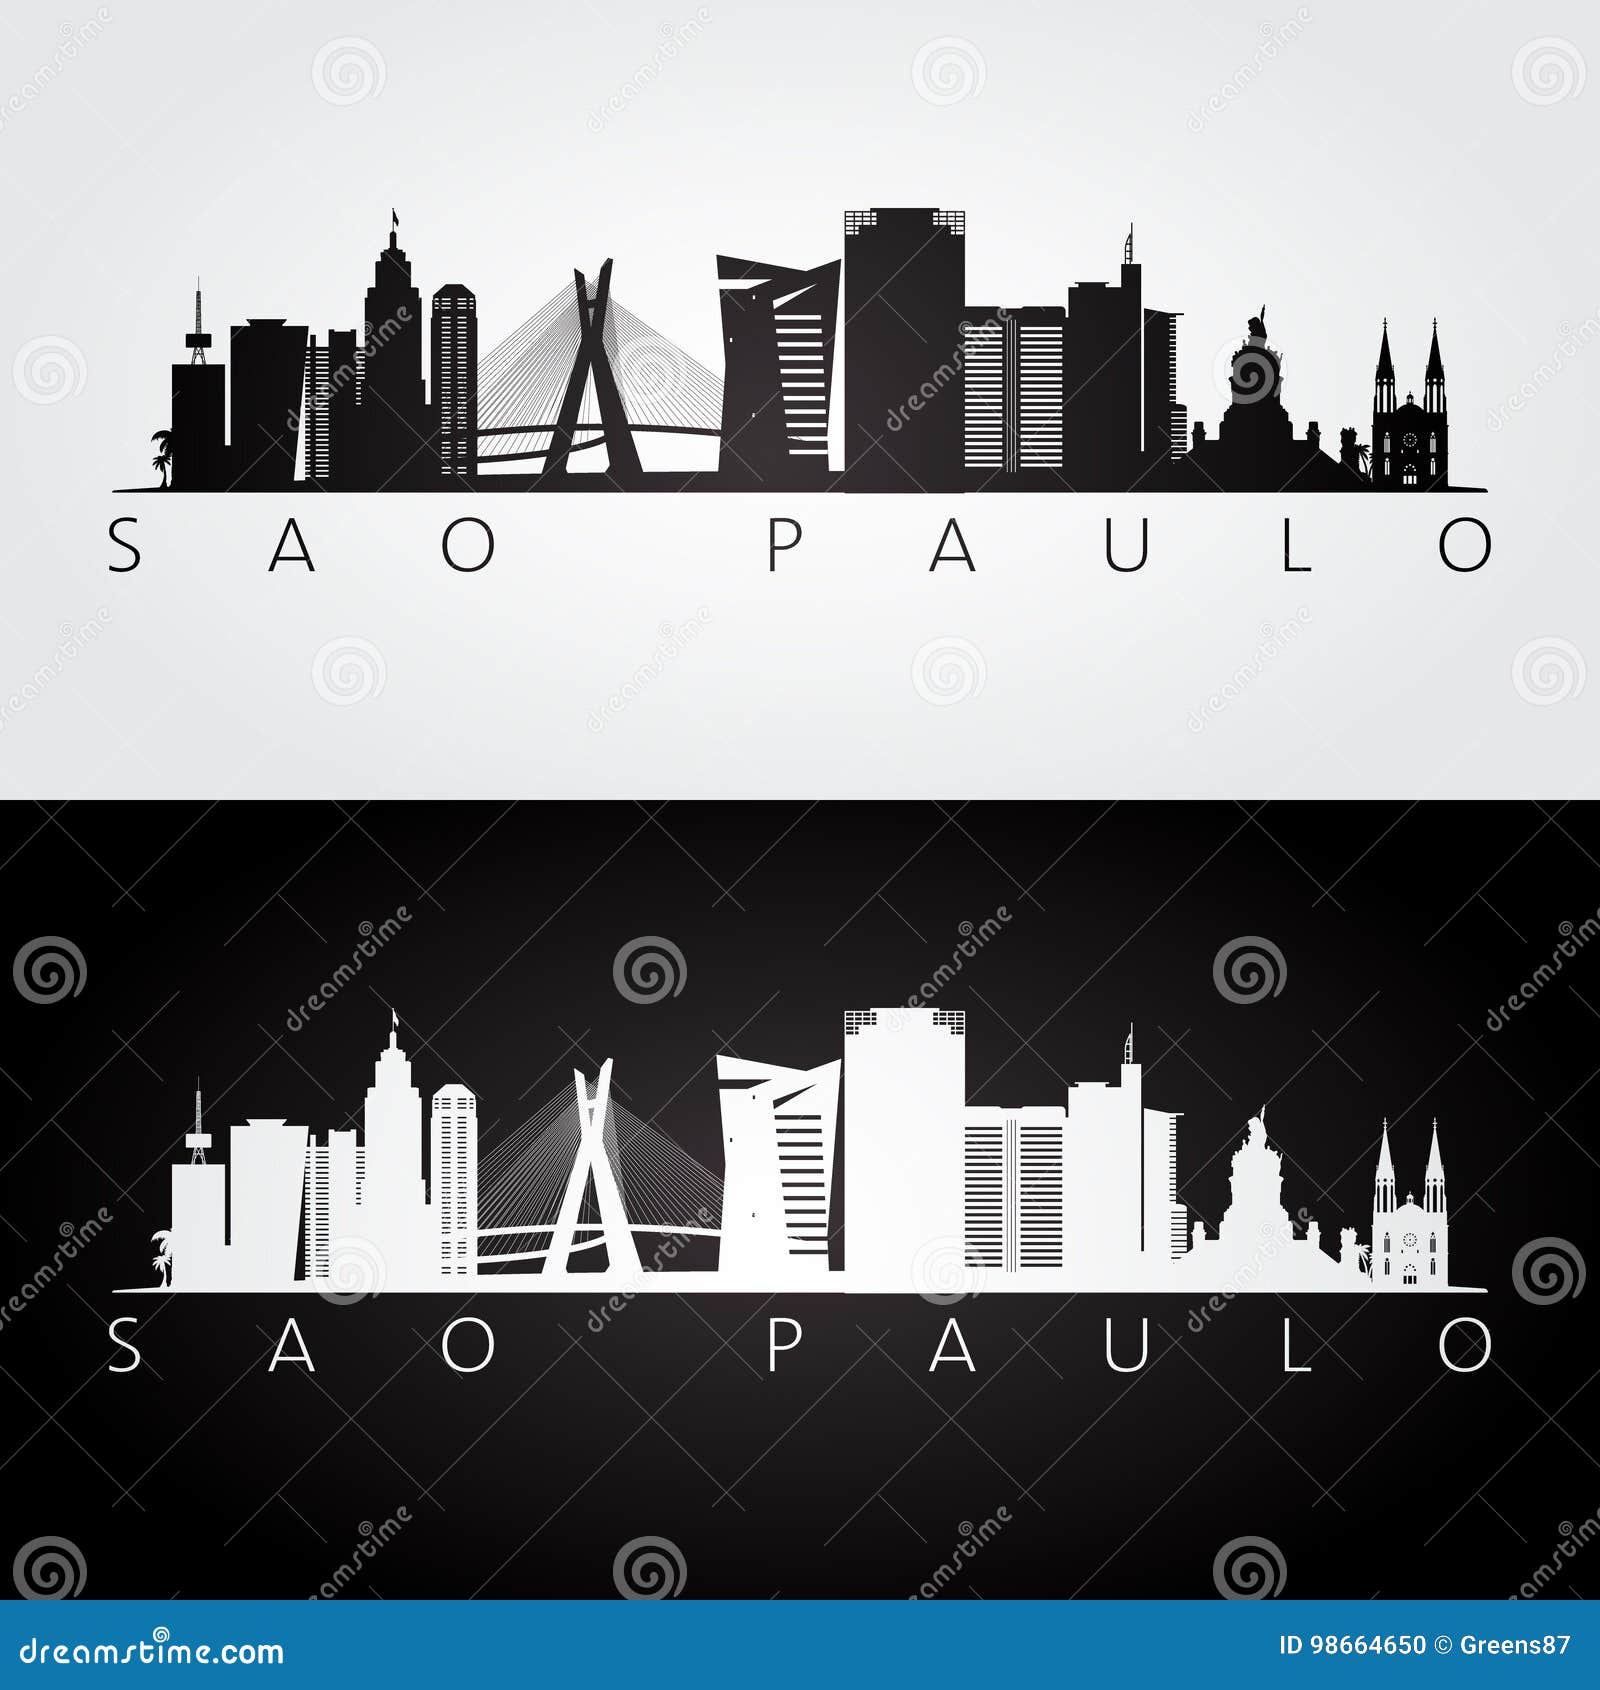 sao paulo skyline and landmarks silhouette